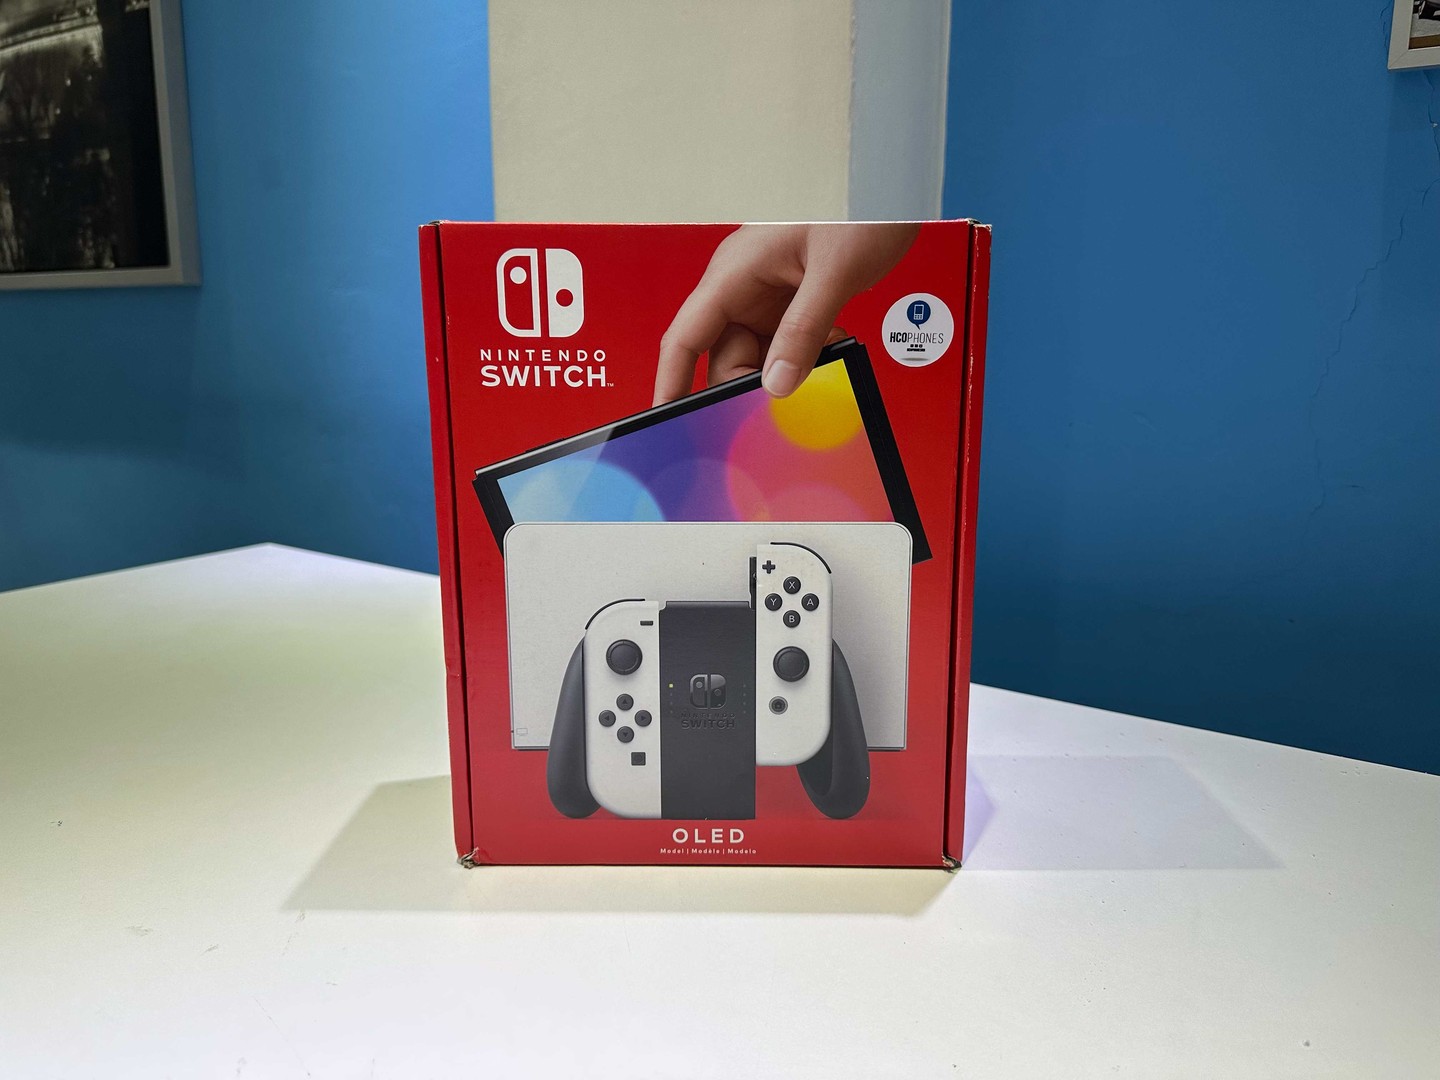 consolas y videojuegos - Nintendo Switch Oled Nuevos Sellados, Originales RD$ 18,500 NEG/ TIENDA